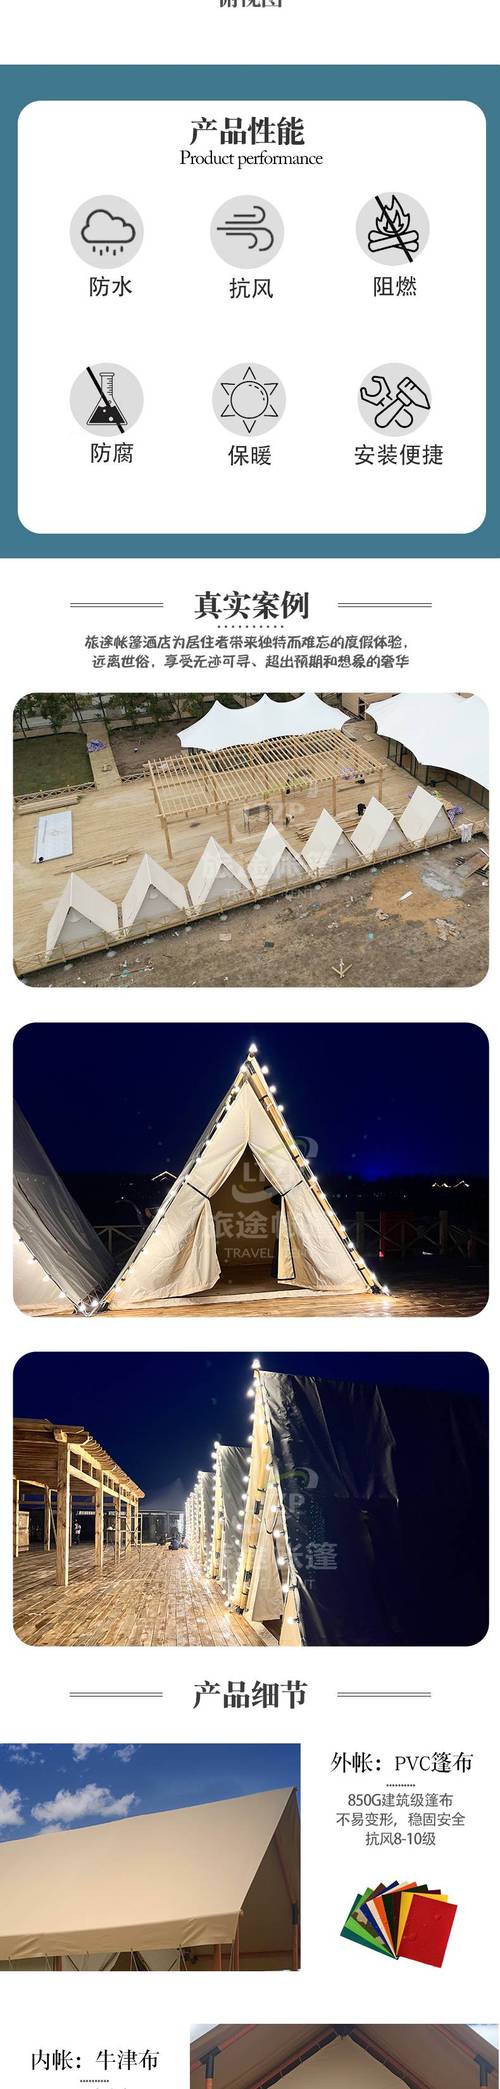 休闲帐篷制作方法图解